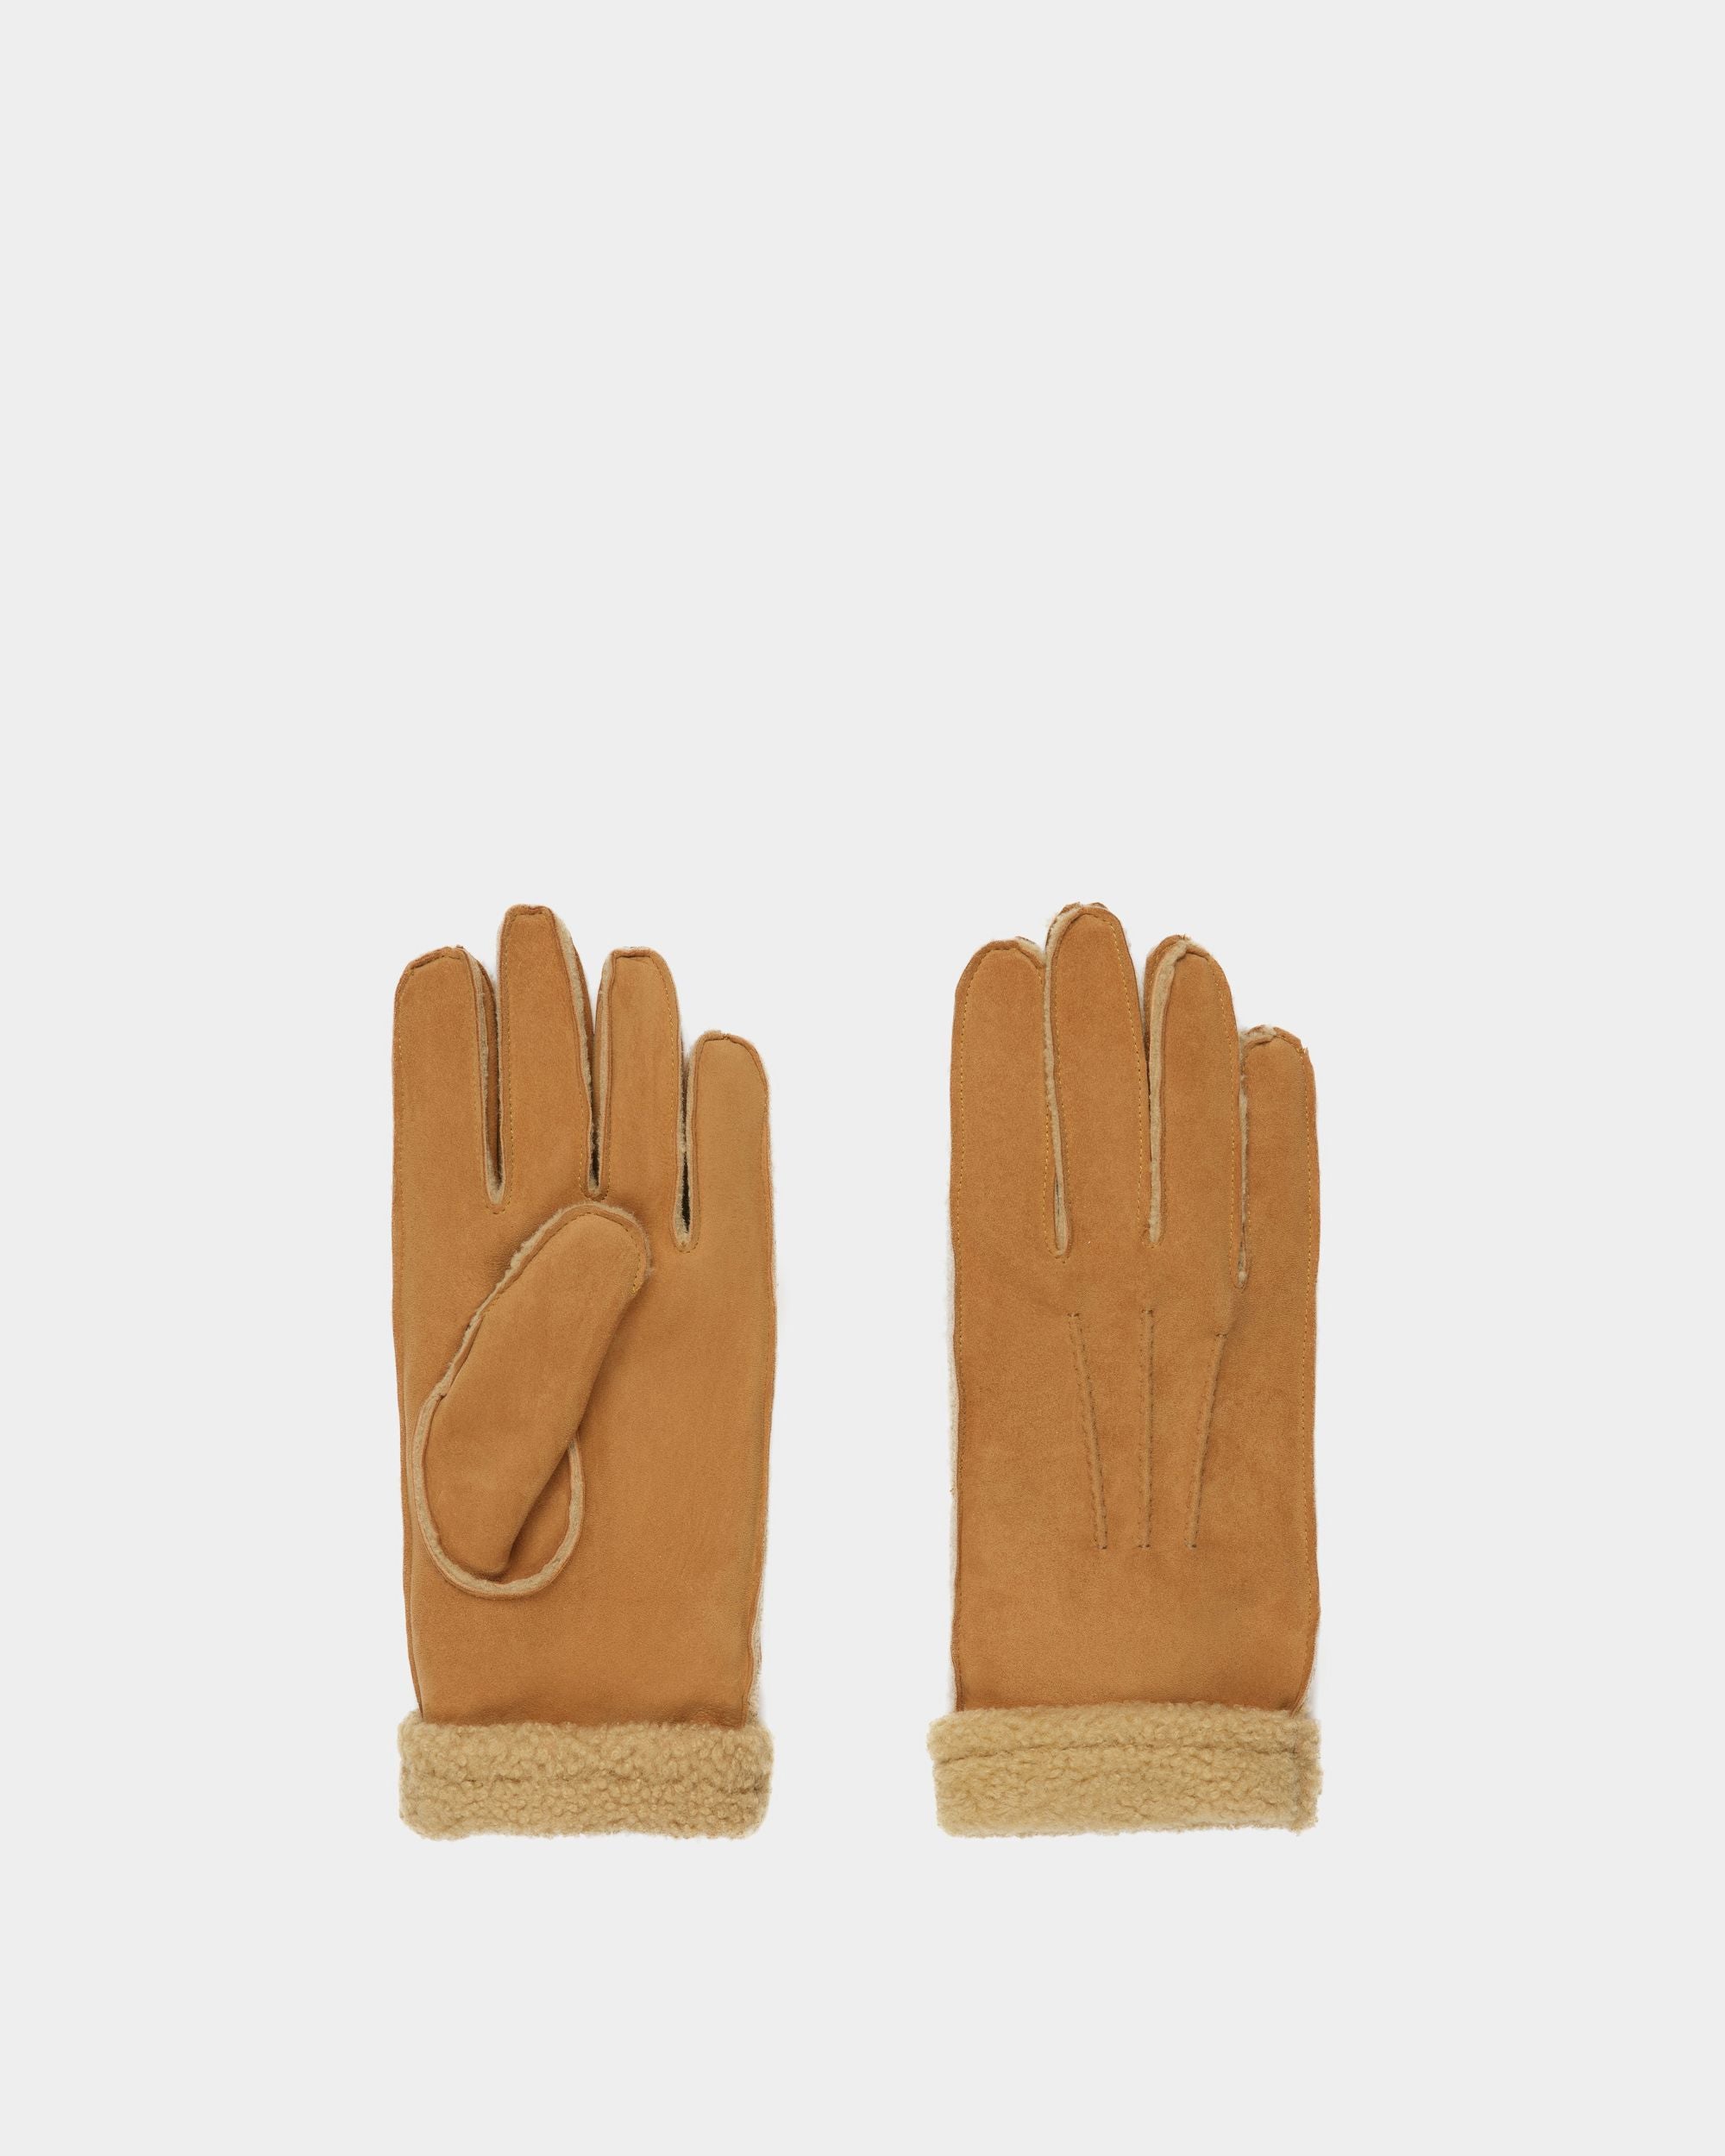 Shearling Gloves | Men's Gloves | Desert Leather | Bally | Still Life Top